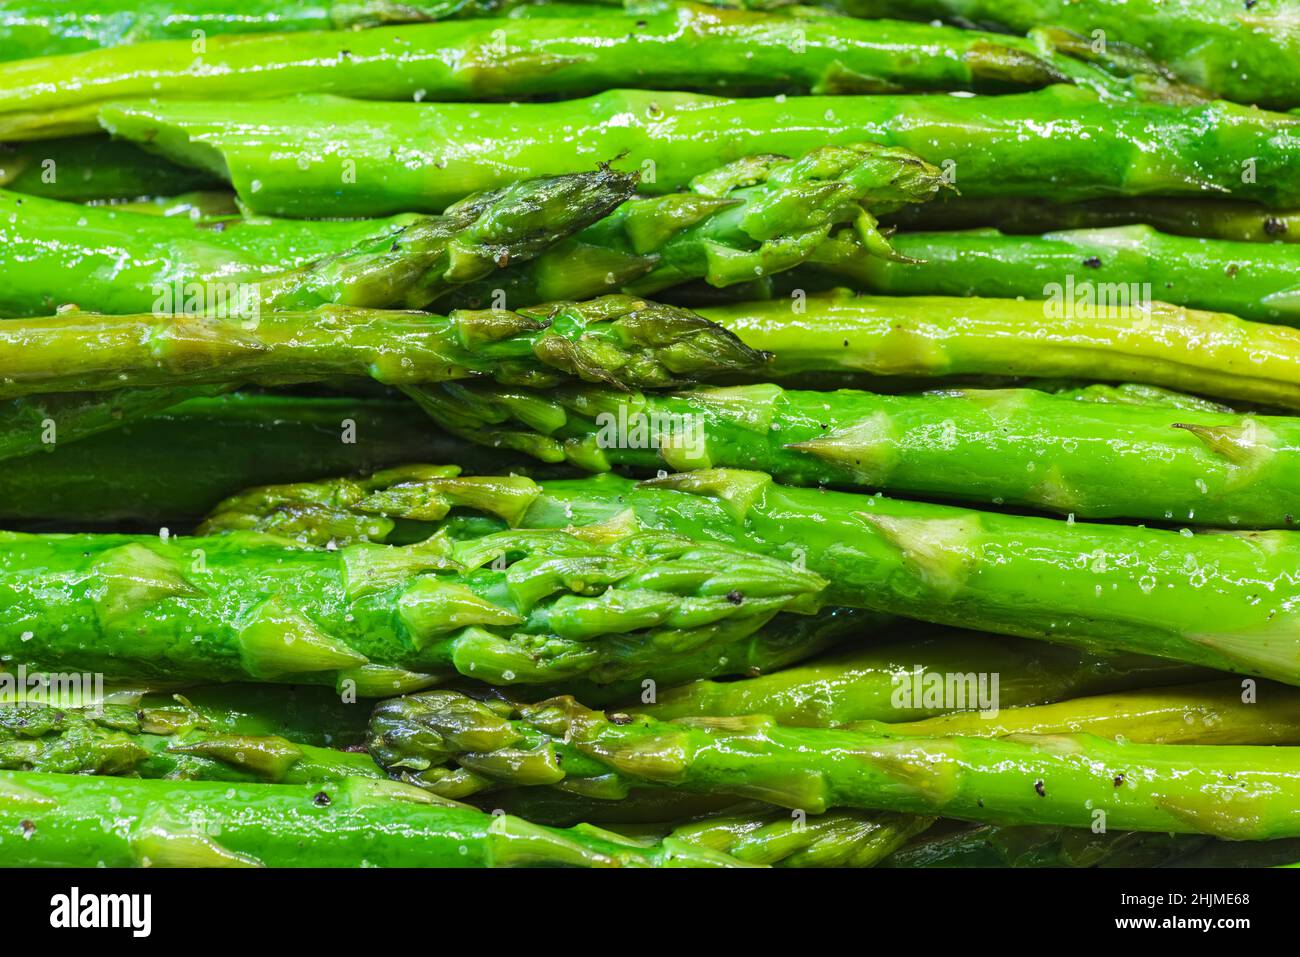 particolare di asparagi verdi cotti con sale Foto Stock